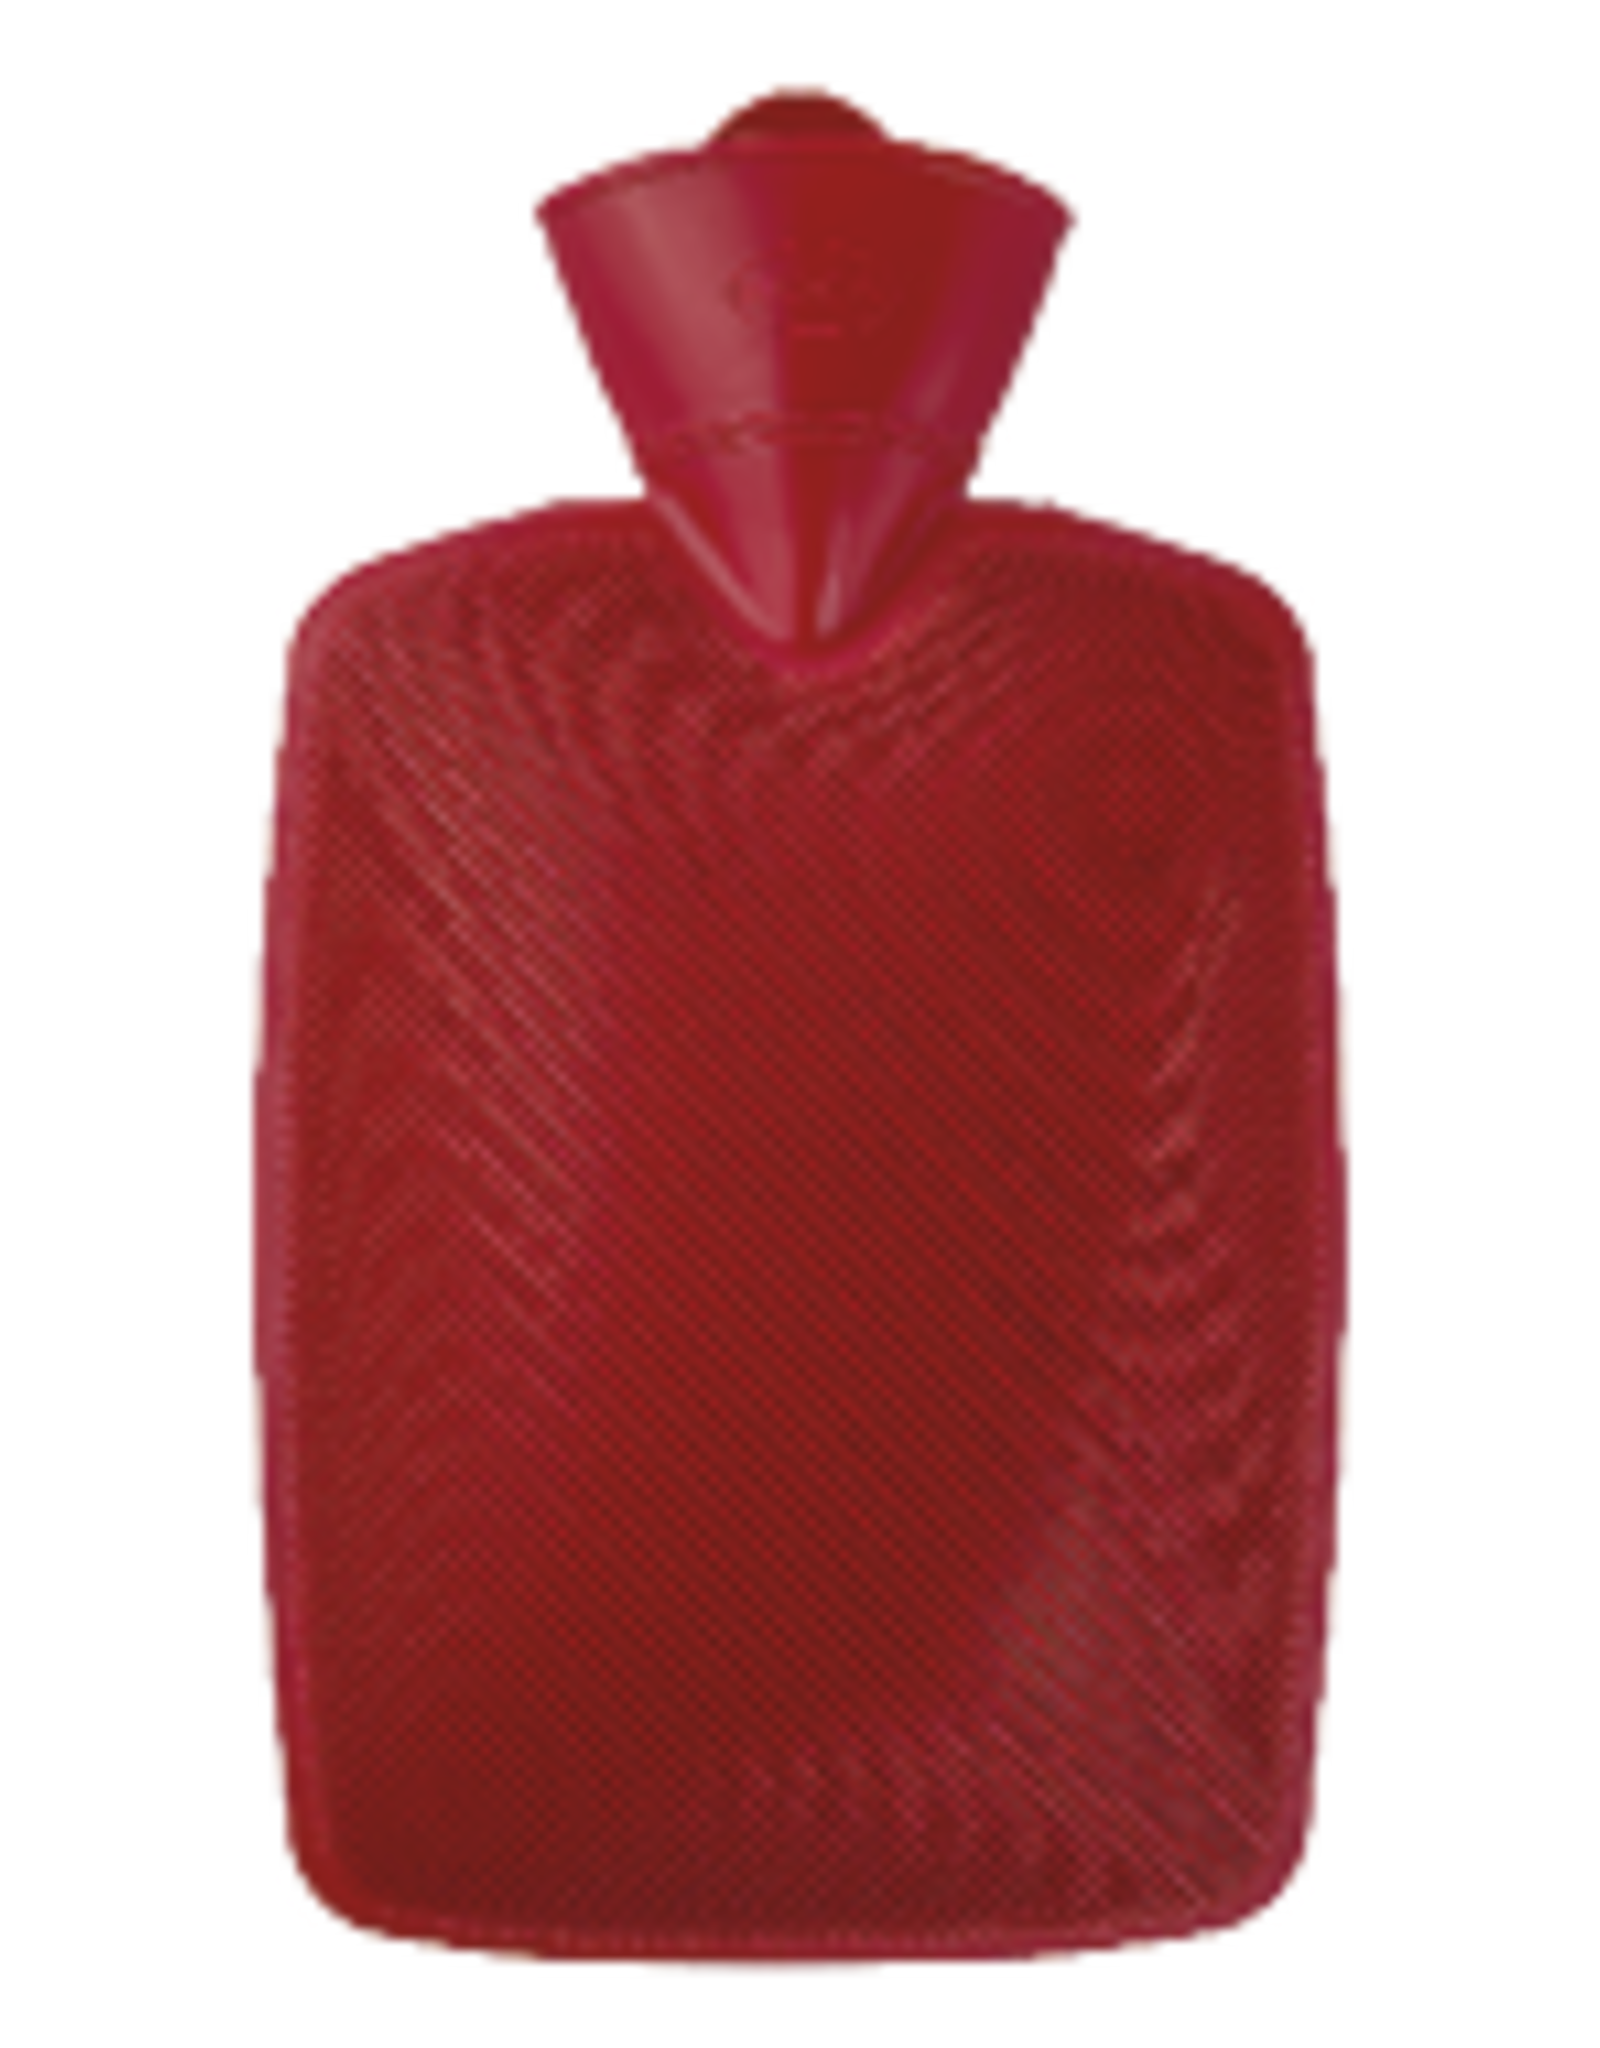 Flipper Warmwaterfles thermoplast rood 1.8L